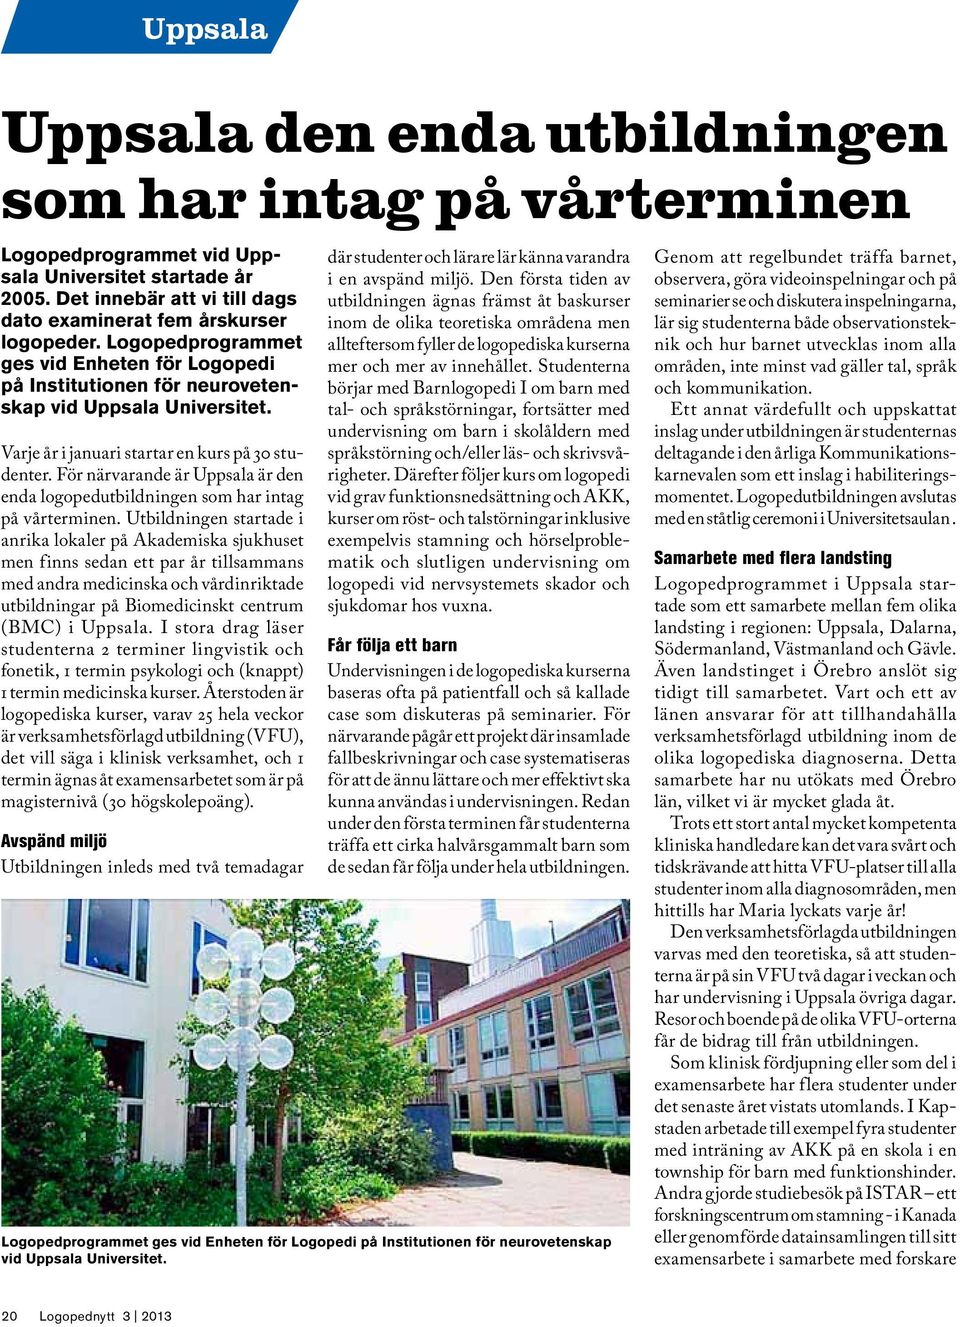 För närvarande är Uppsala är den enda logopedutbildningen som har intag på vårterminen.